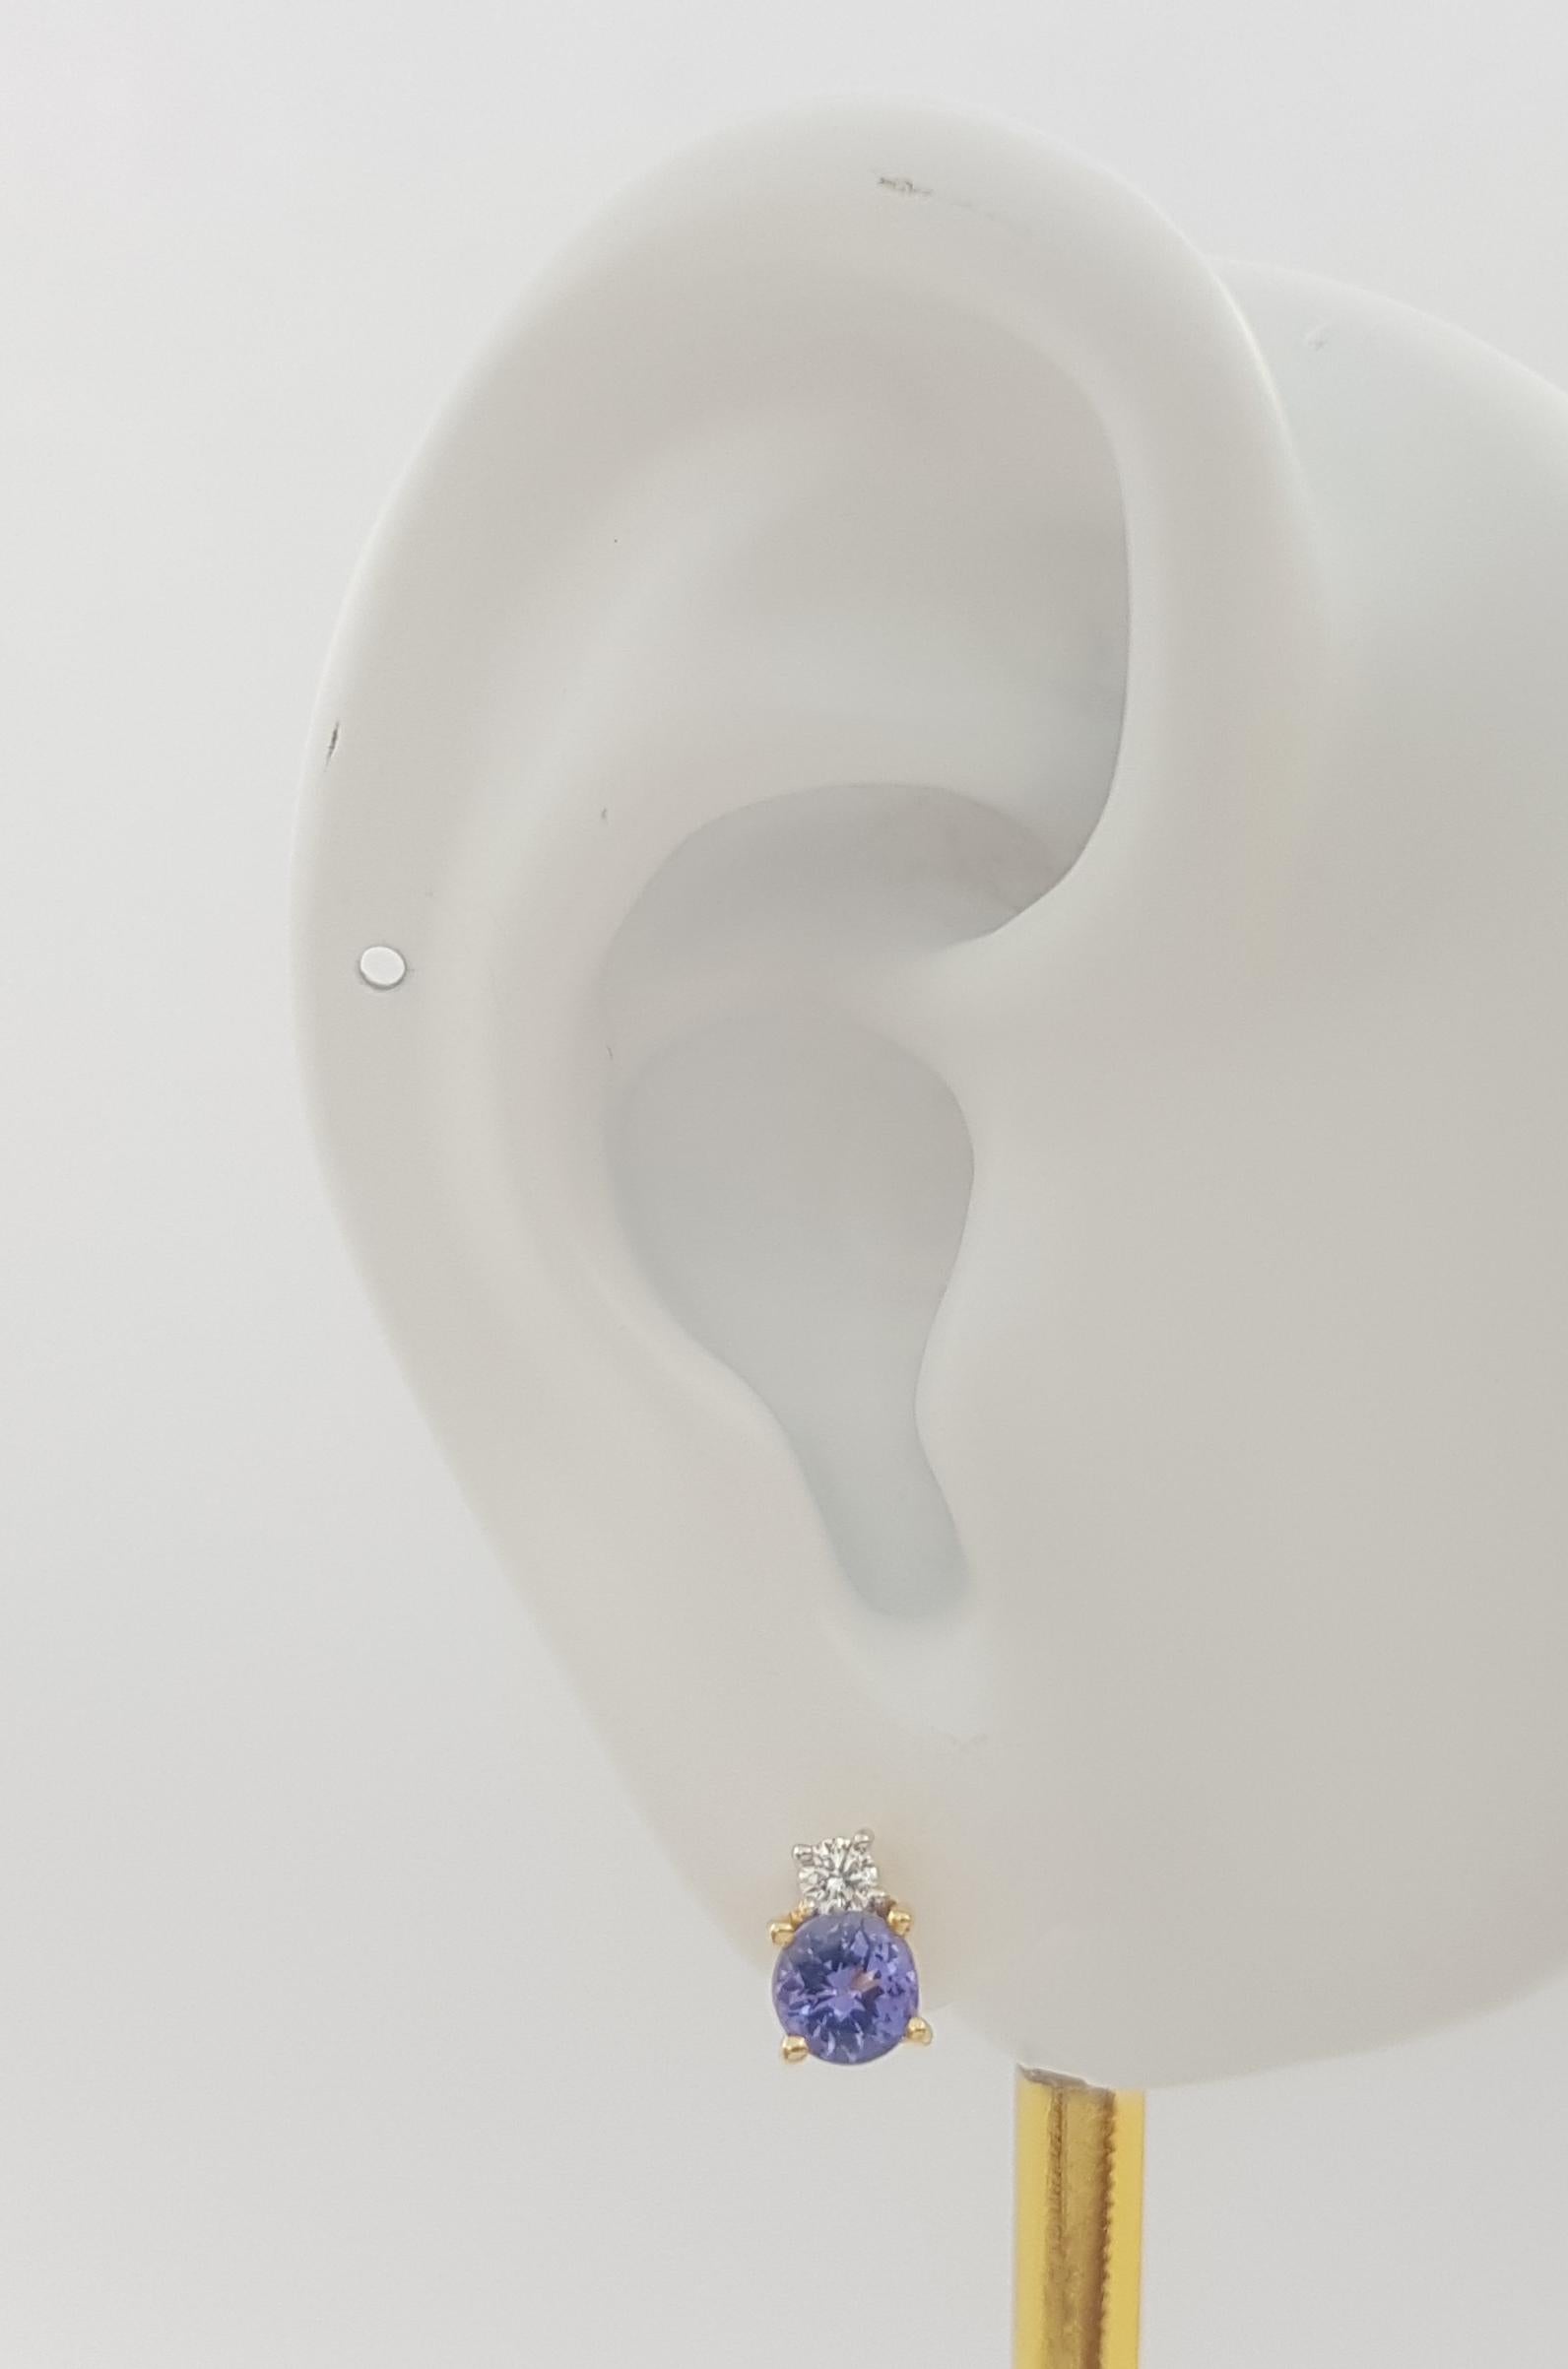 Boucles d'oreilles Tanzanite 0.90 carat et Diamant 0.11 carat montées sur or 18K

Largeur : 0,4 cm 
Longueur : 0,7 cm
Poids total : 3,40 grammes

